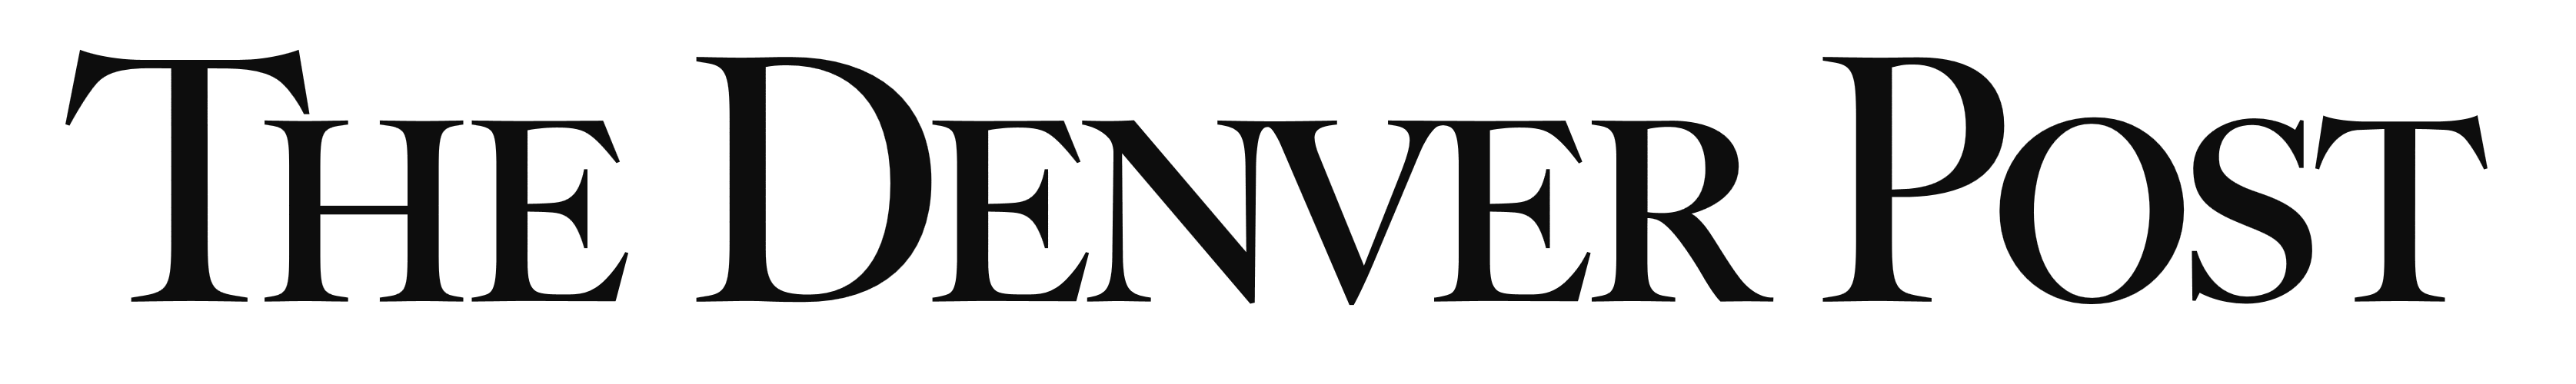 The Denver Post logo, logotype